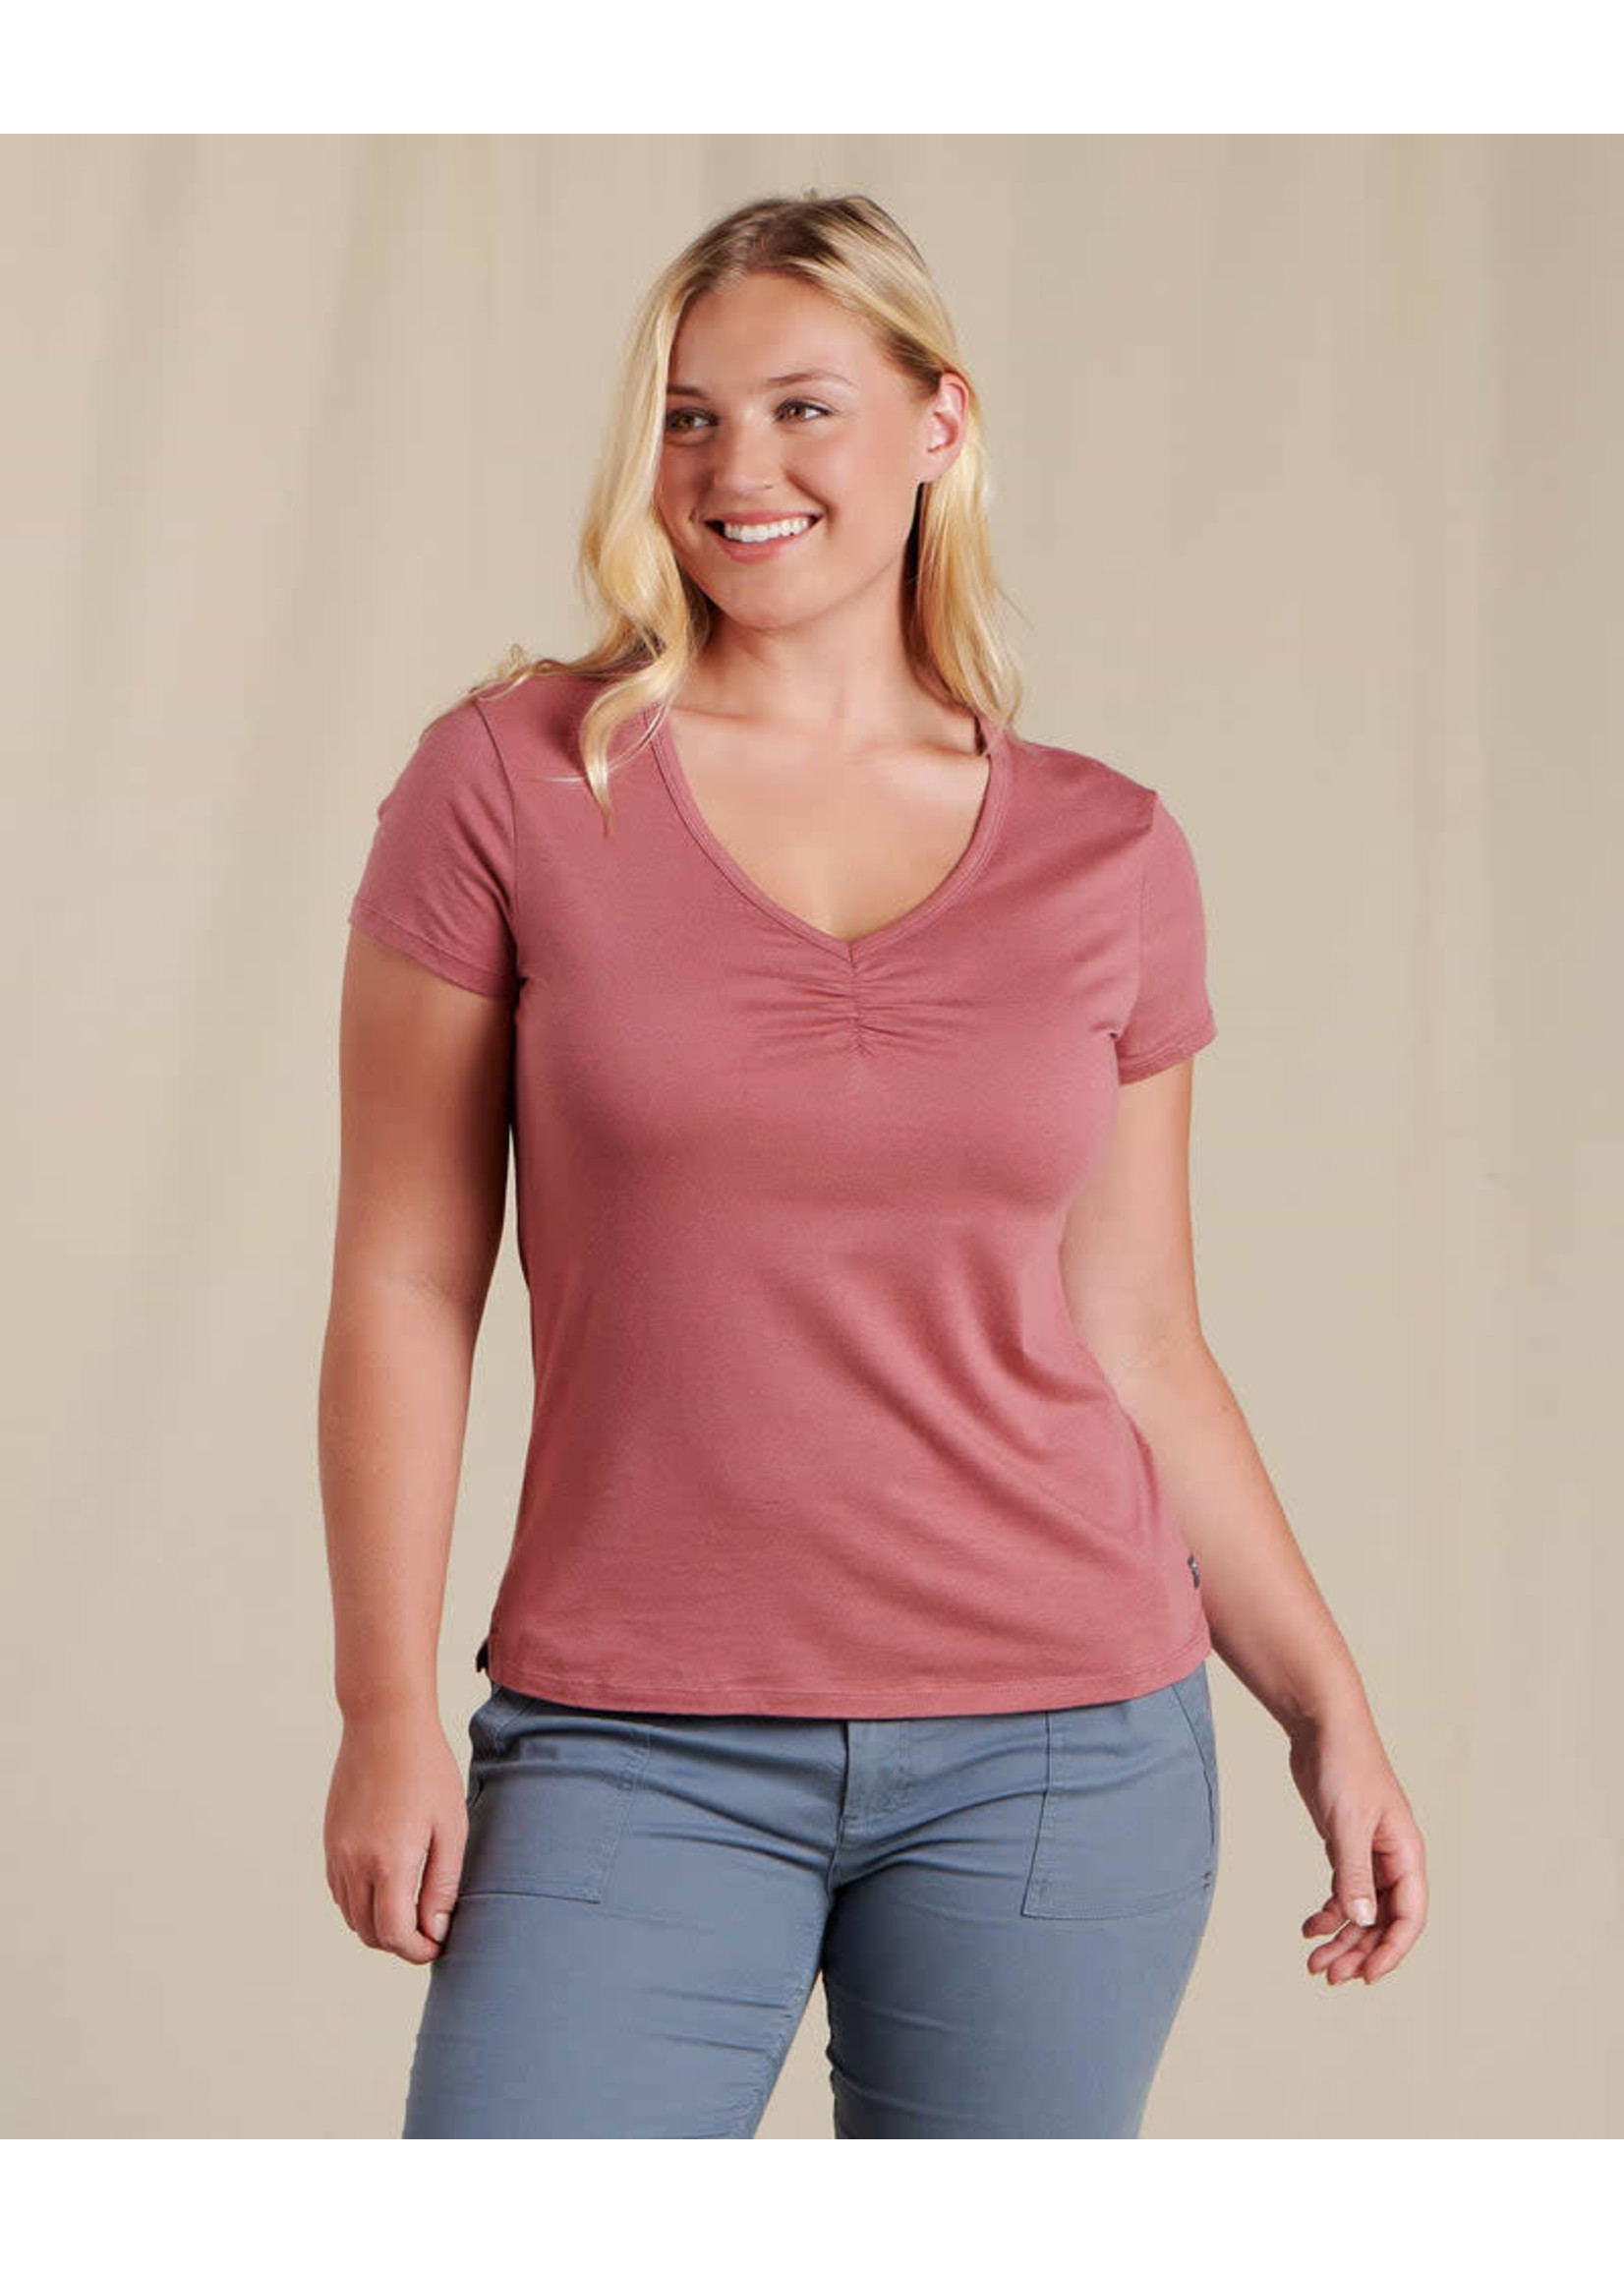 TOAD & CO T-shirt ROSE (Femme)